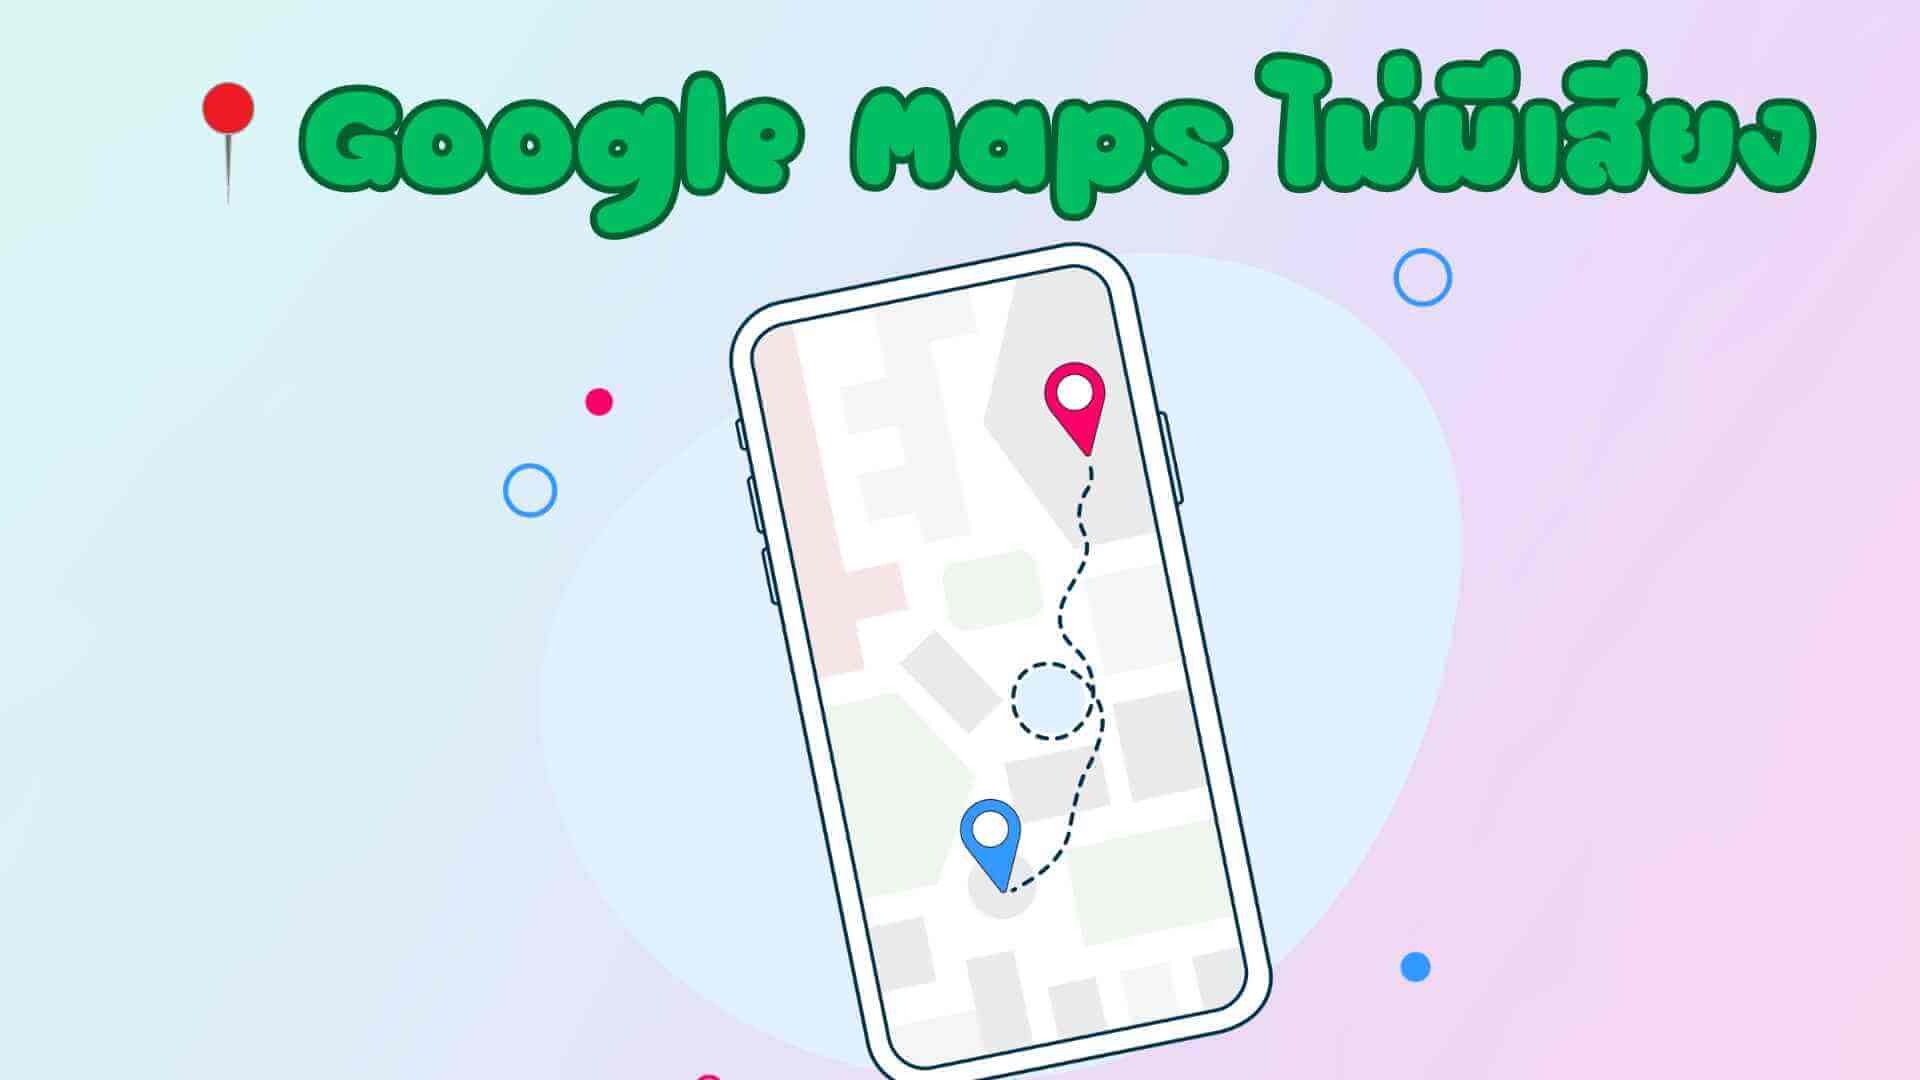 [ล่าสุด] วิธีแก้ไข Google Maps ไม่มีเสียง สามารถทำตามได้ง่าย ๆ!